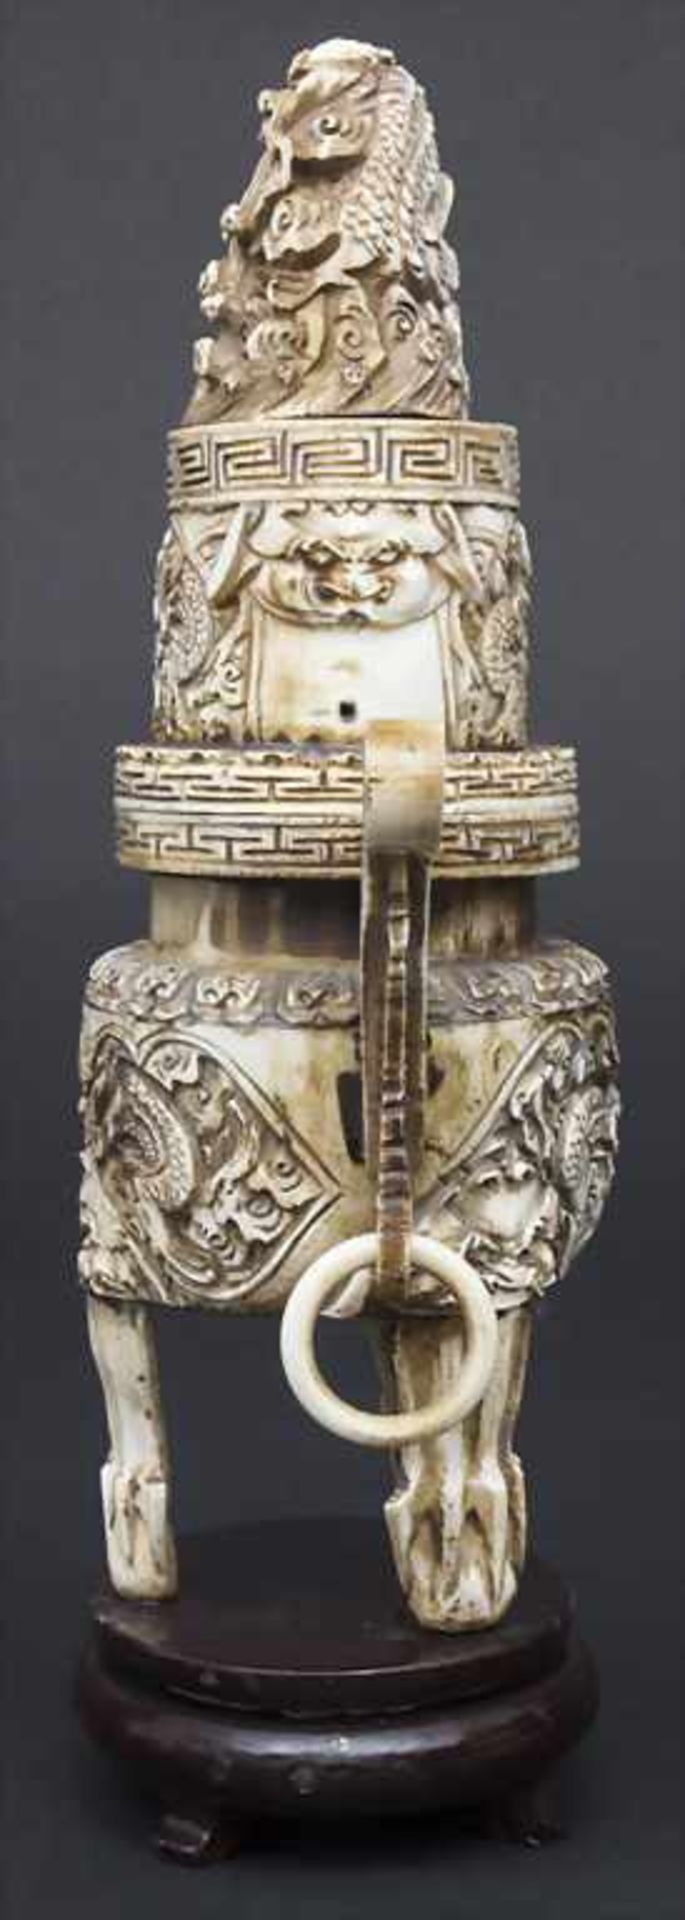 Räuchergefäß mit Drachendekor / An incense burner with dragons, China, um 1900Material: Elfenbein, - Bild 3 aus 11